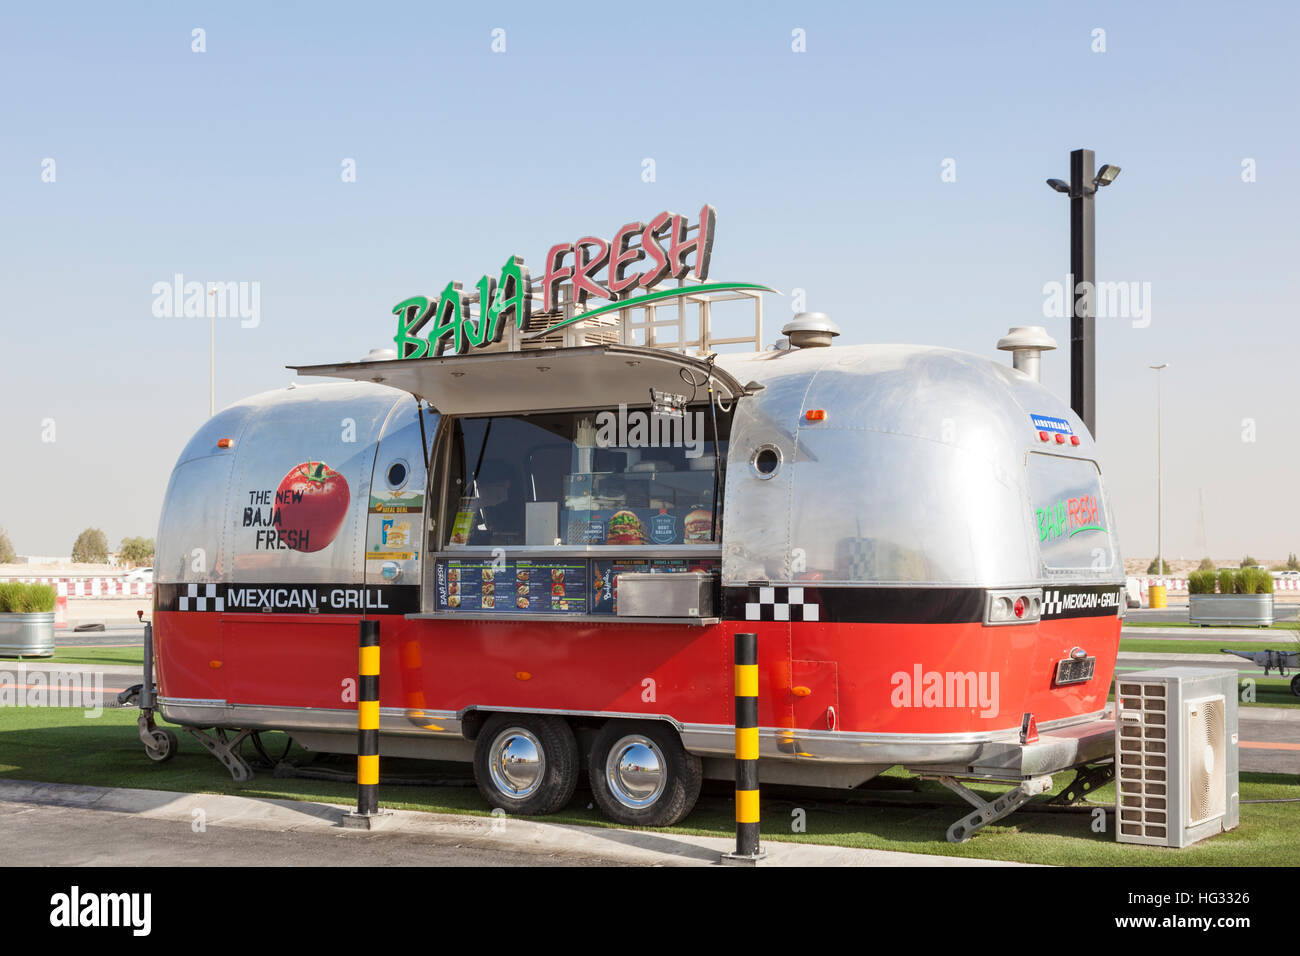 Airstream caravan food truck in Dubai Stock Photo